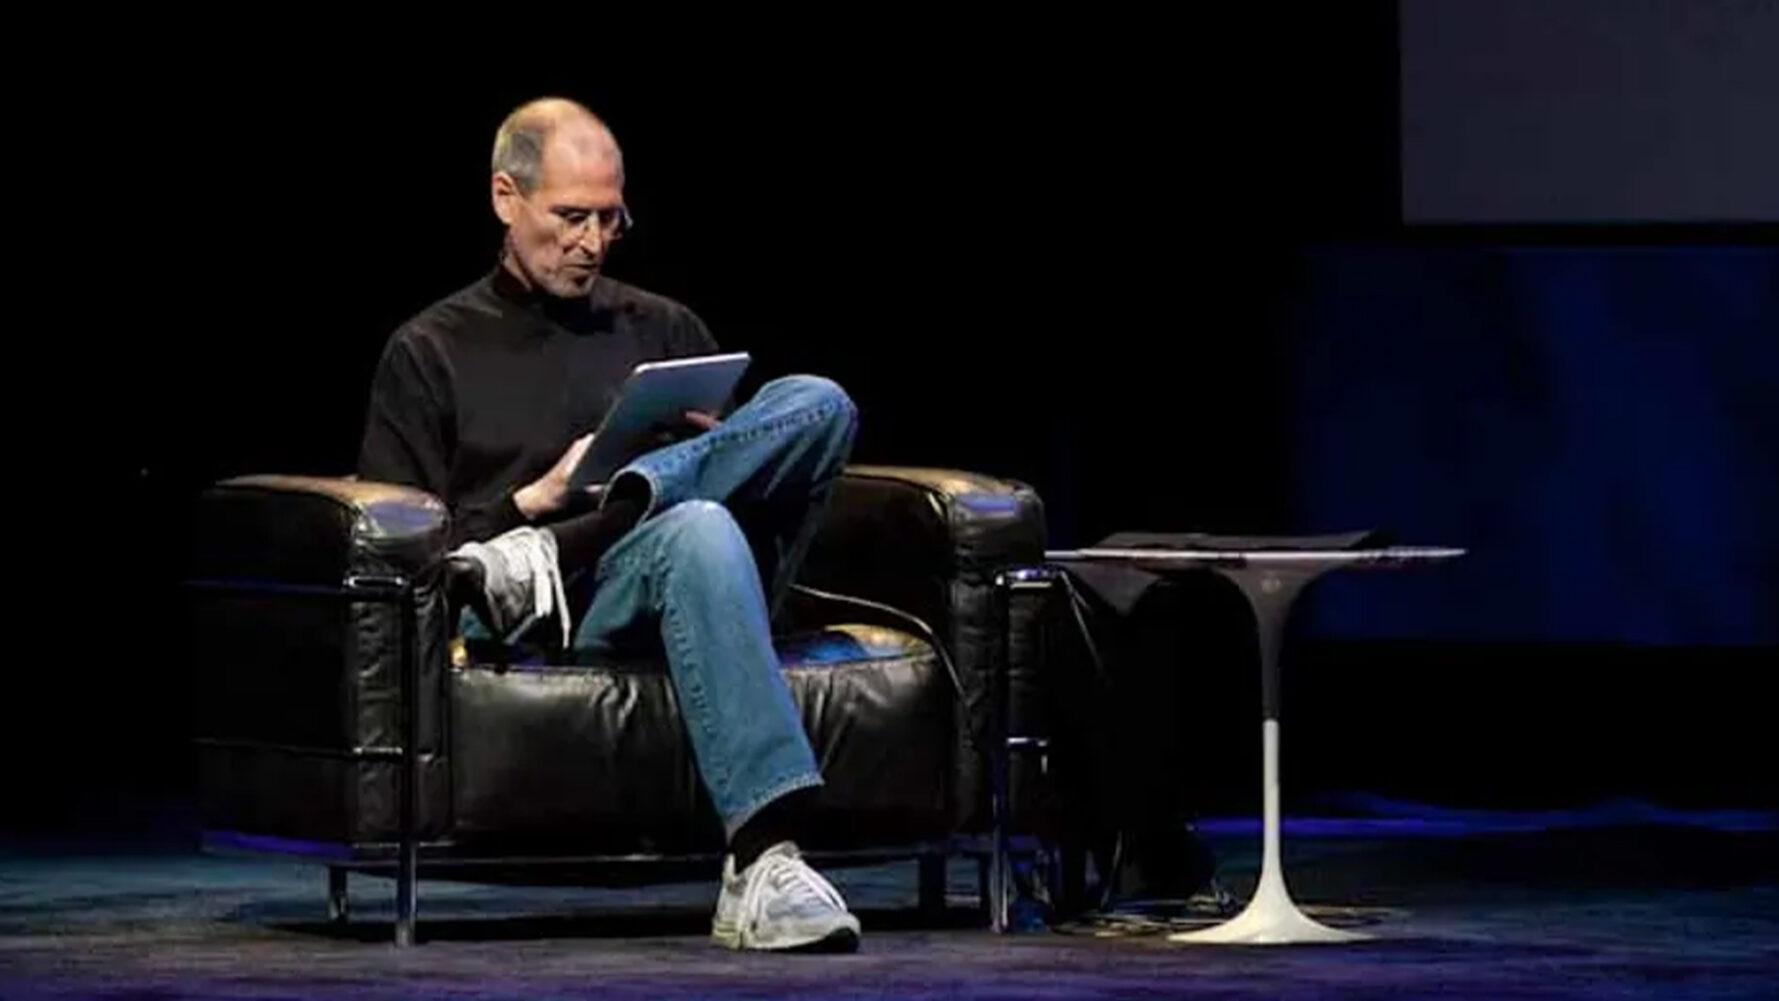 Steve Jobs - iPad (2010)